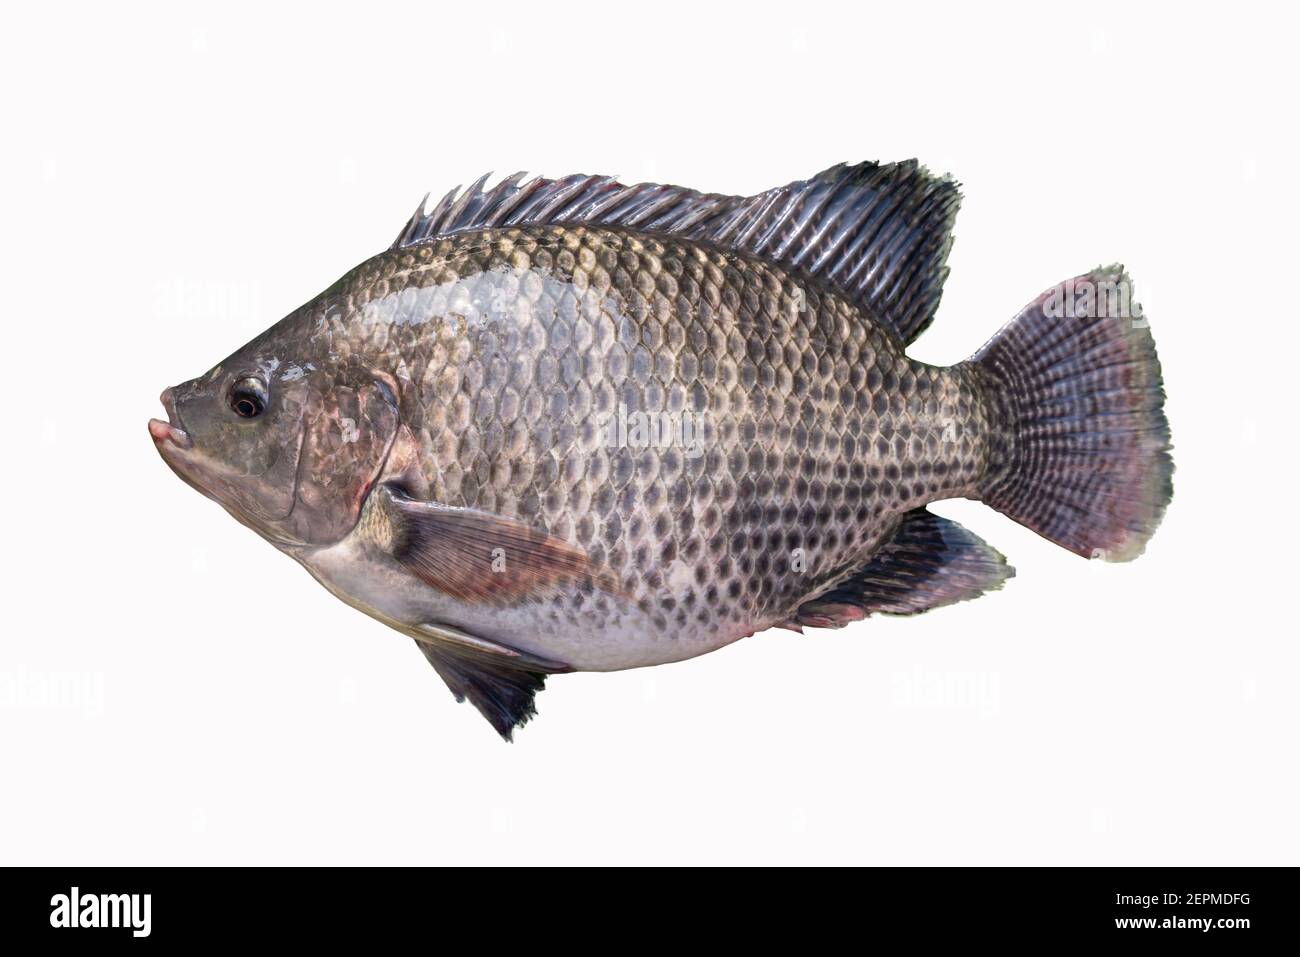 Big plentiful fat tilapia fish isolated on white background. Stock Photo